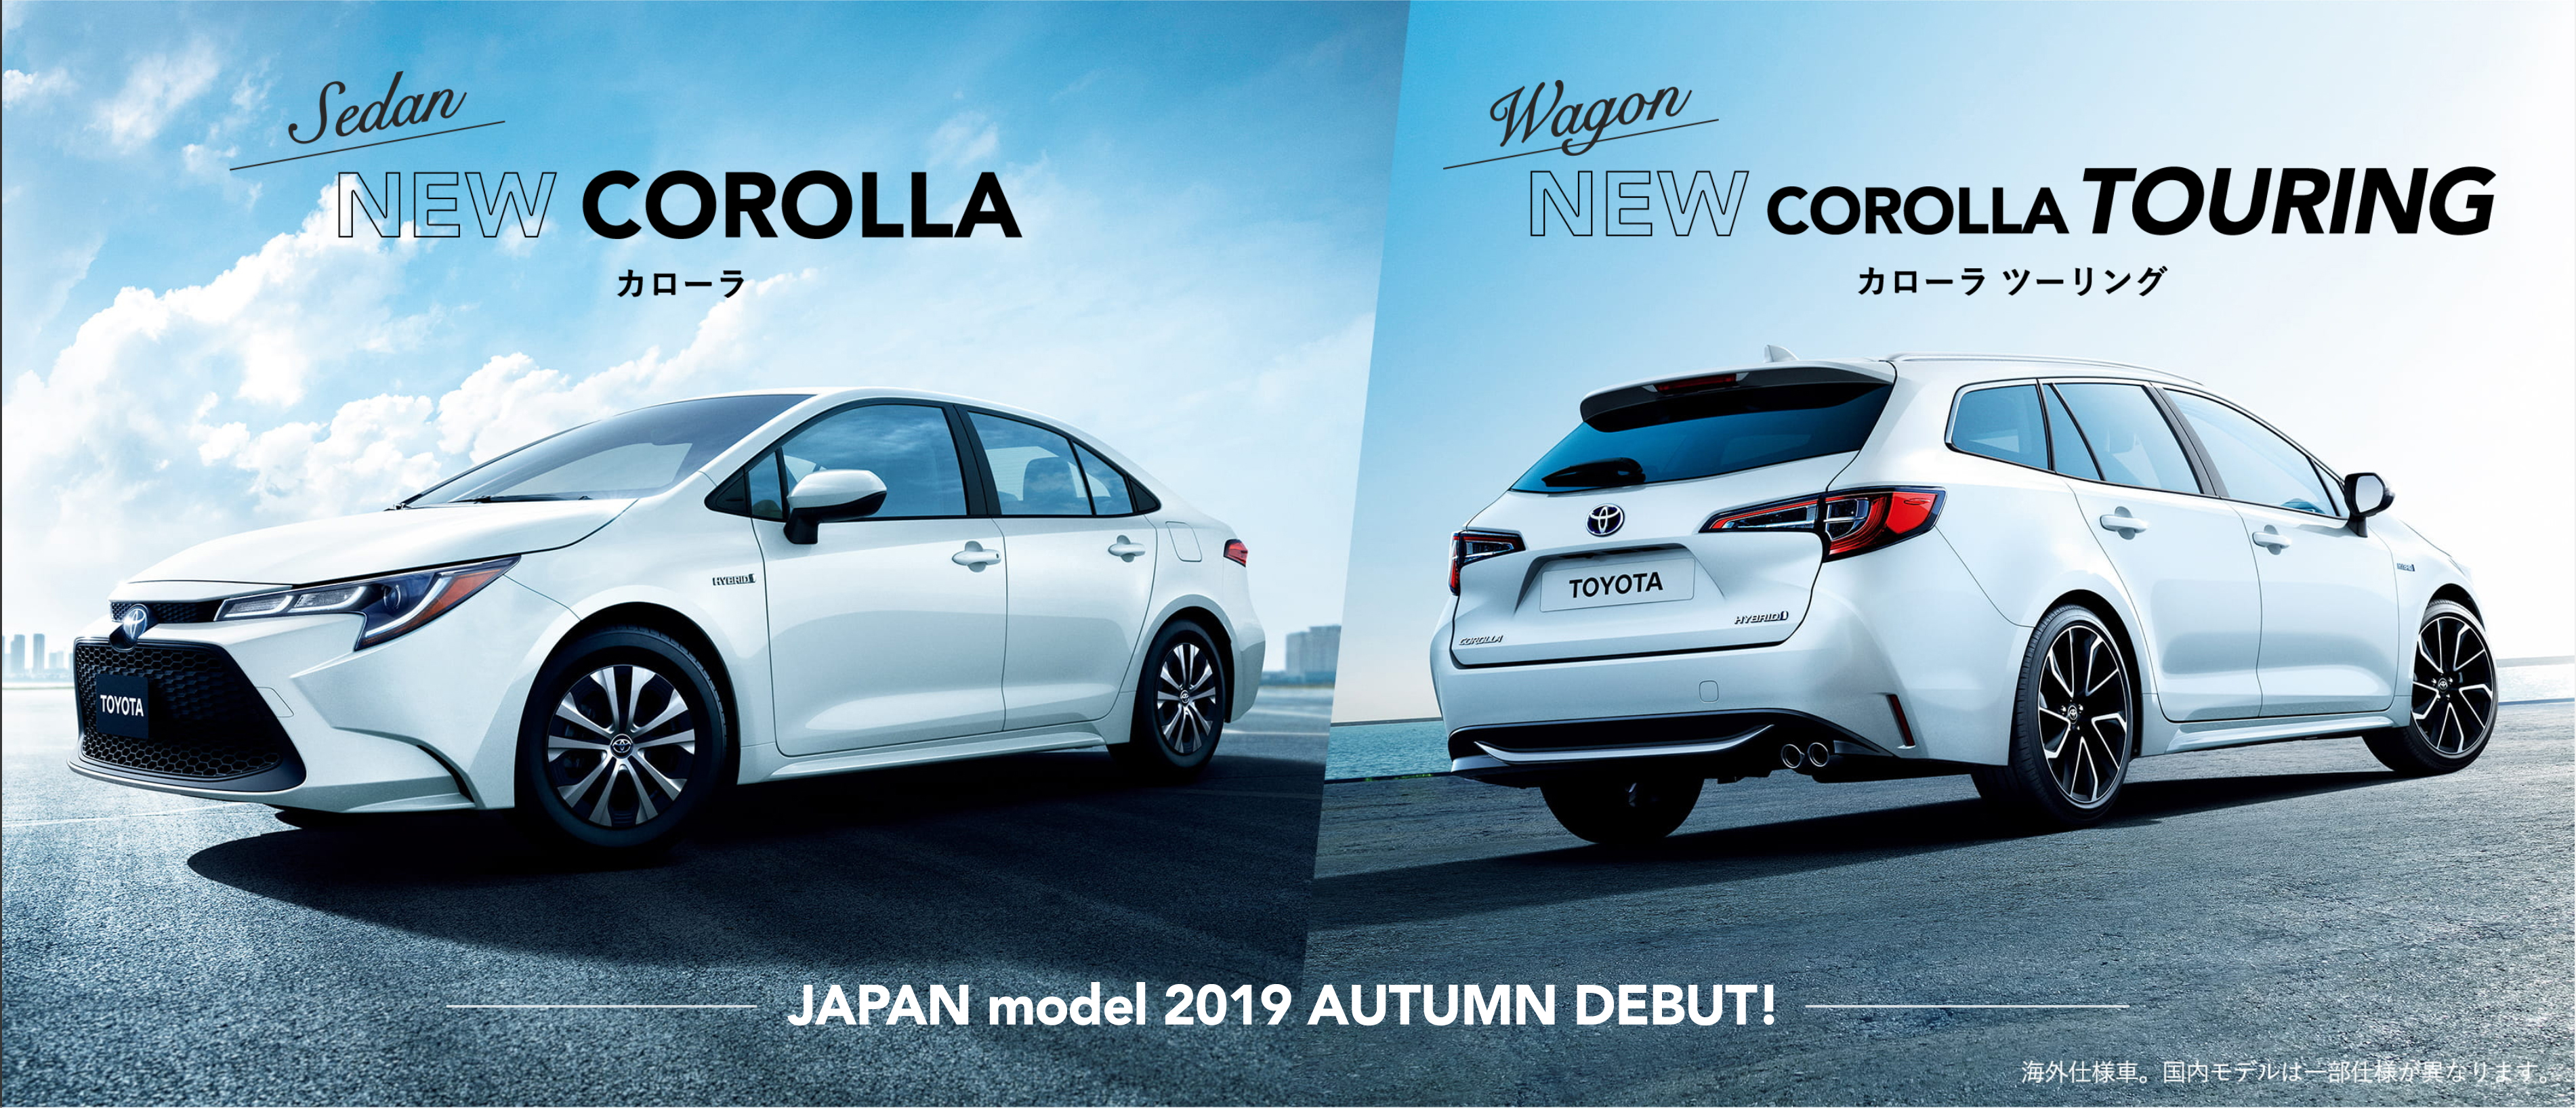 Toyota 新型カローラ 新型カローラ ツーリング の情報をホームページで先行公開 中古車なら グーネット